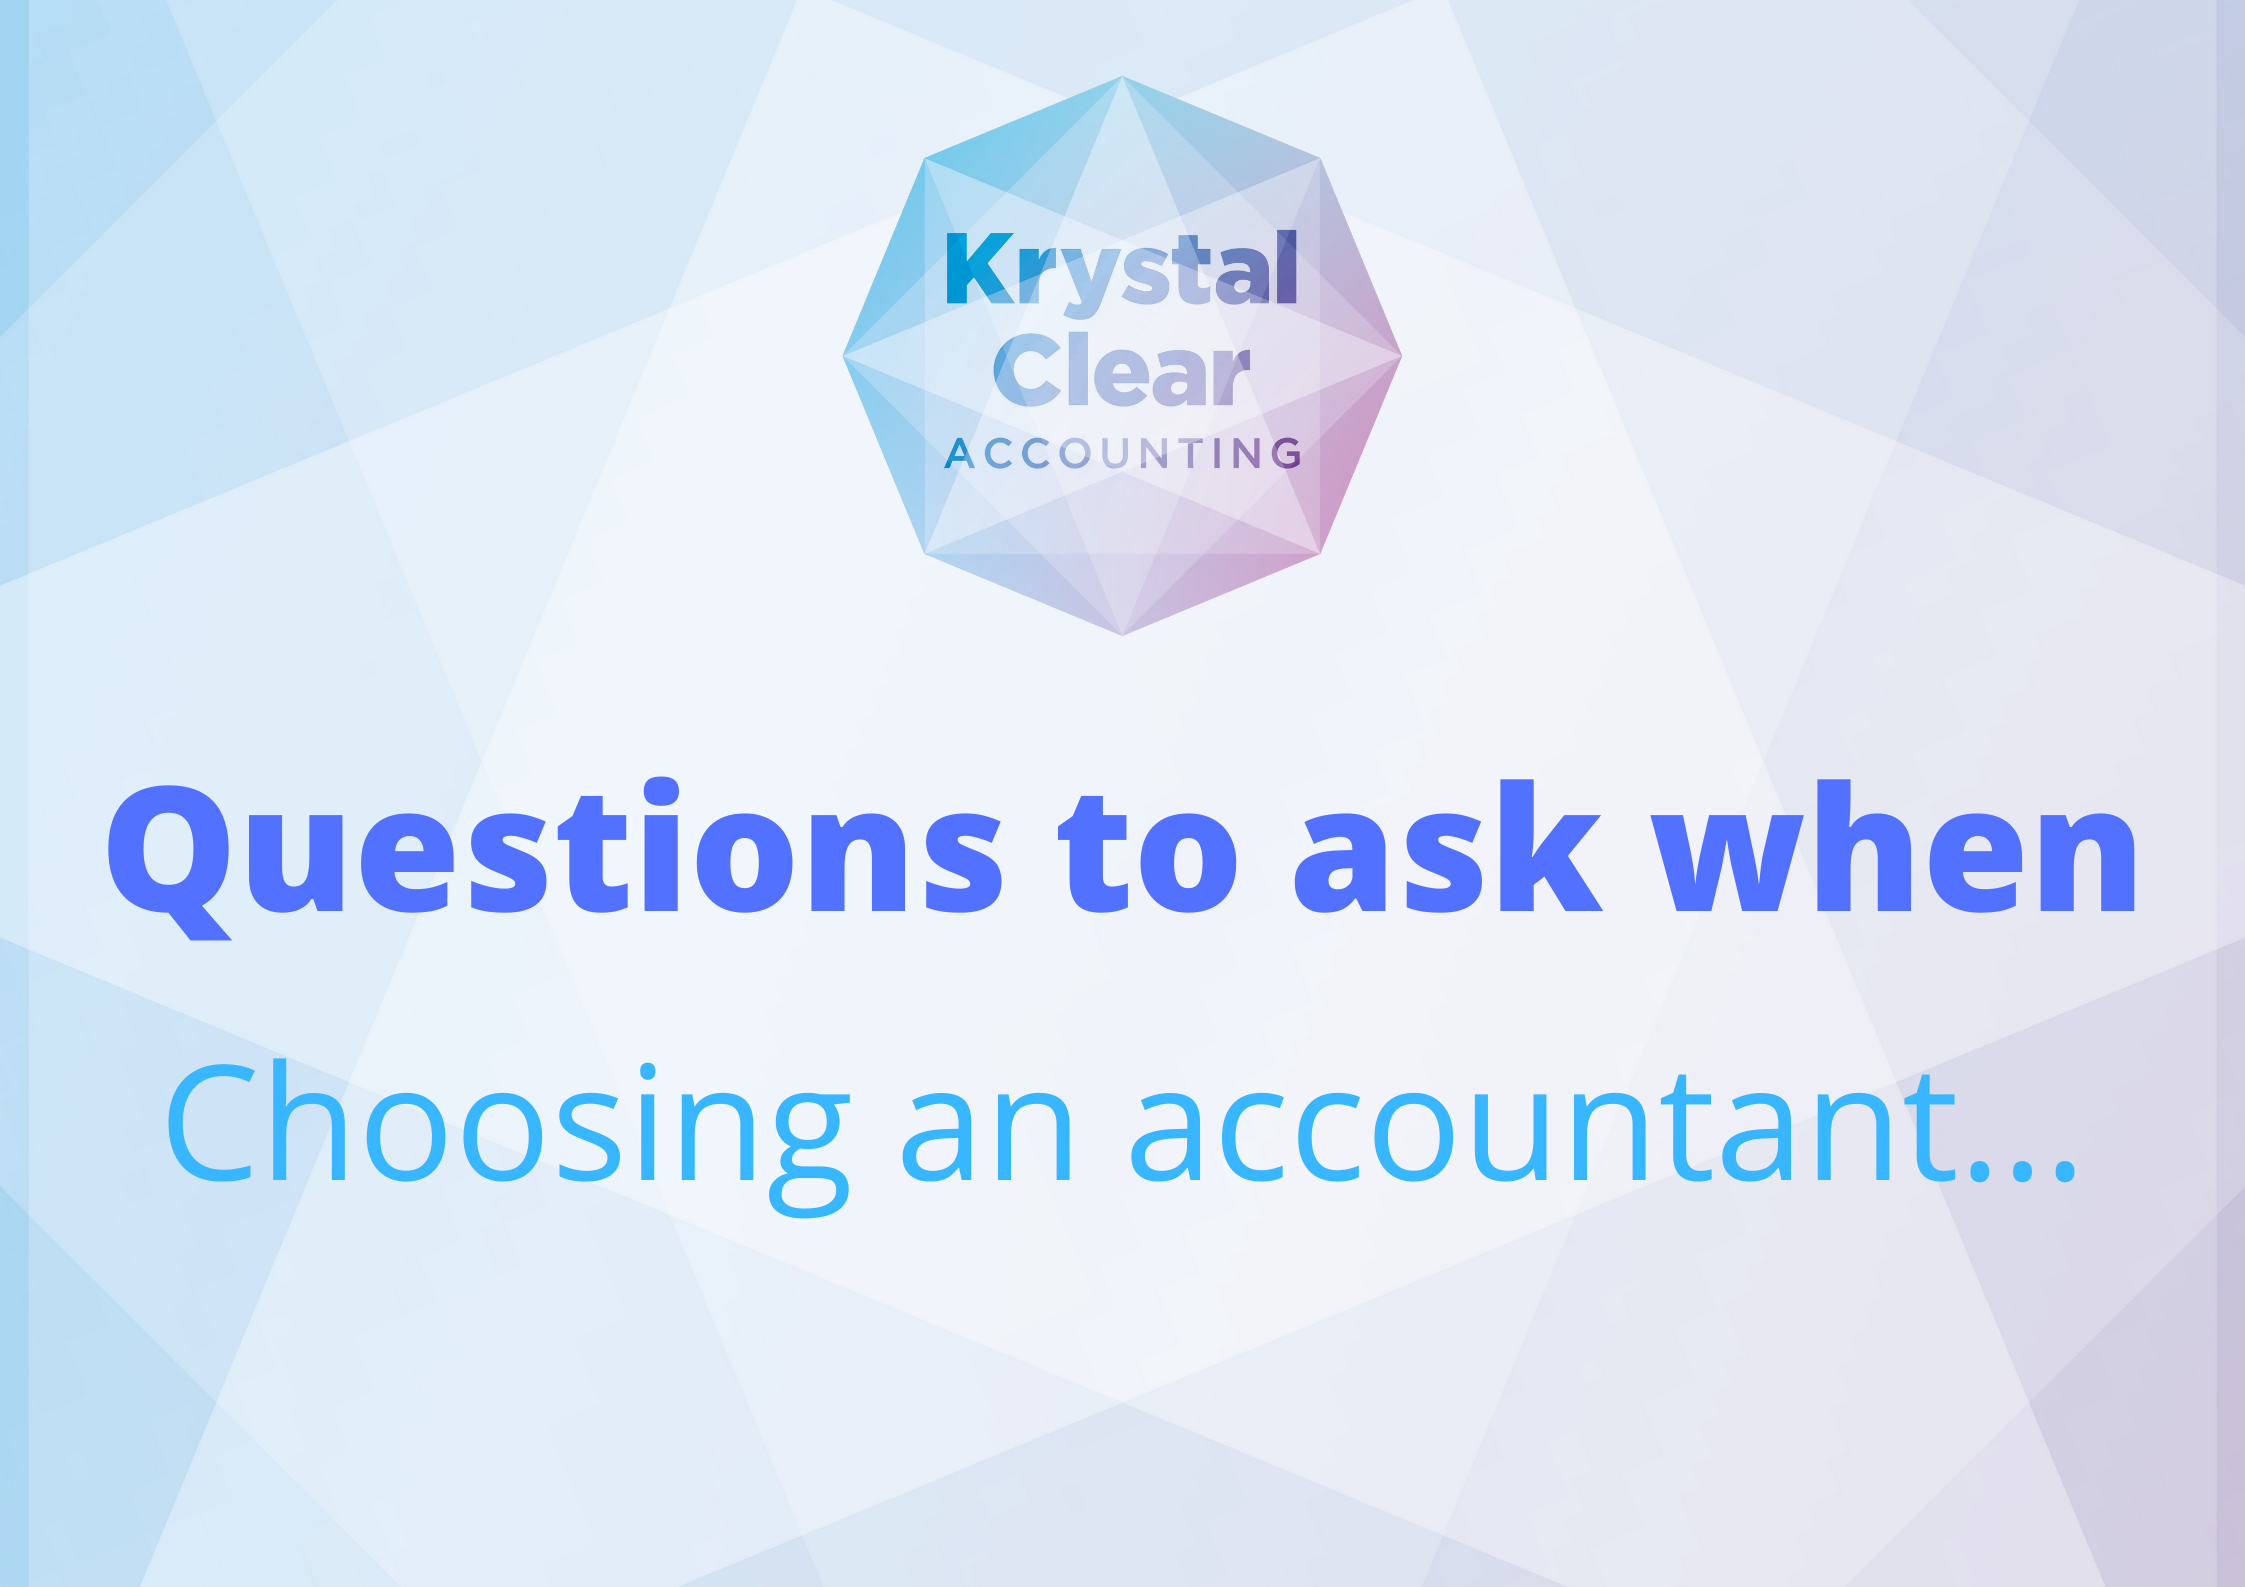 Choosing an accountant